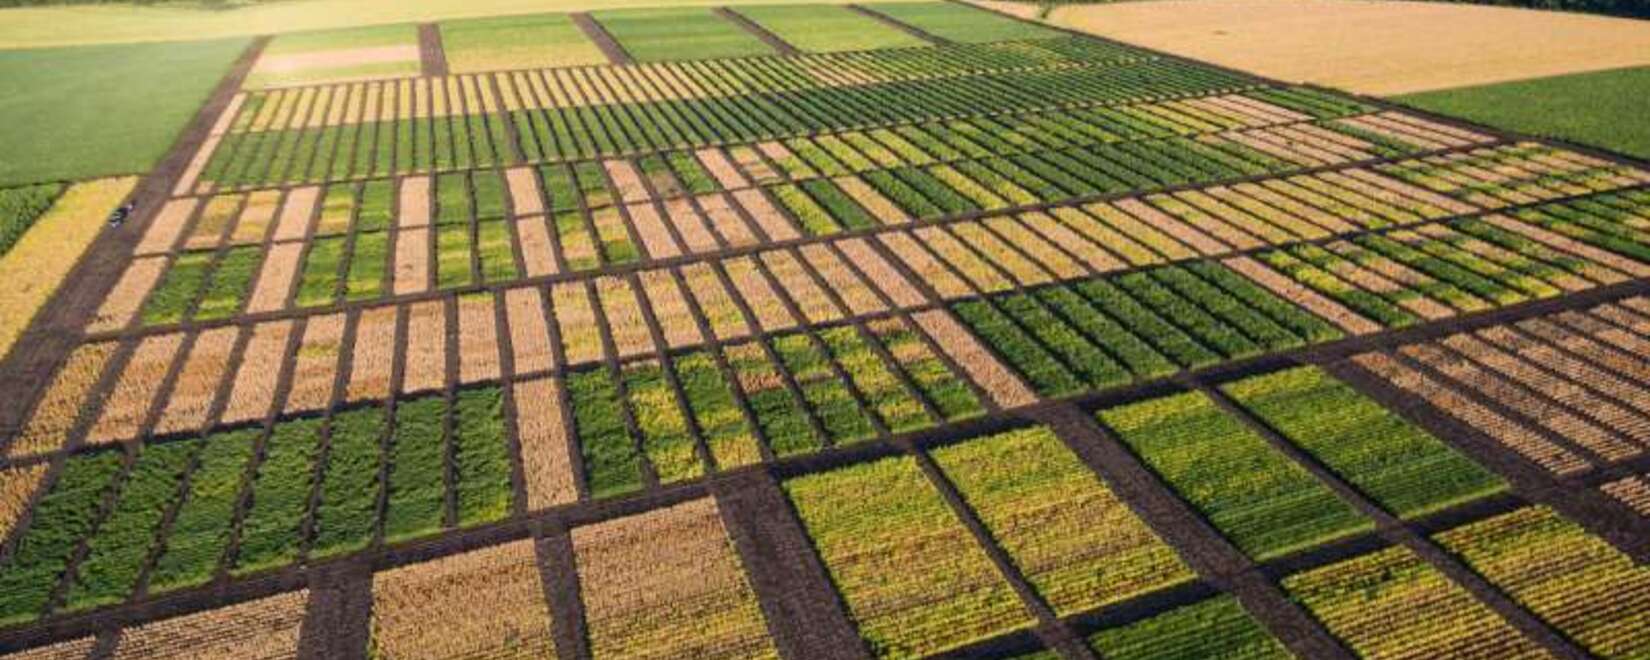 Бразилия увеличит посевы сои и сократит площади под кукурузой